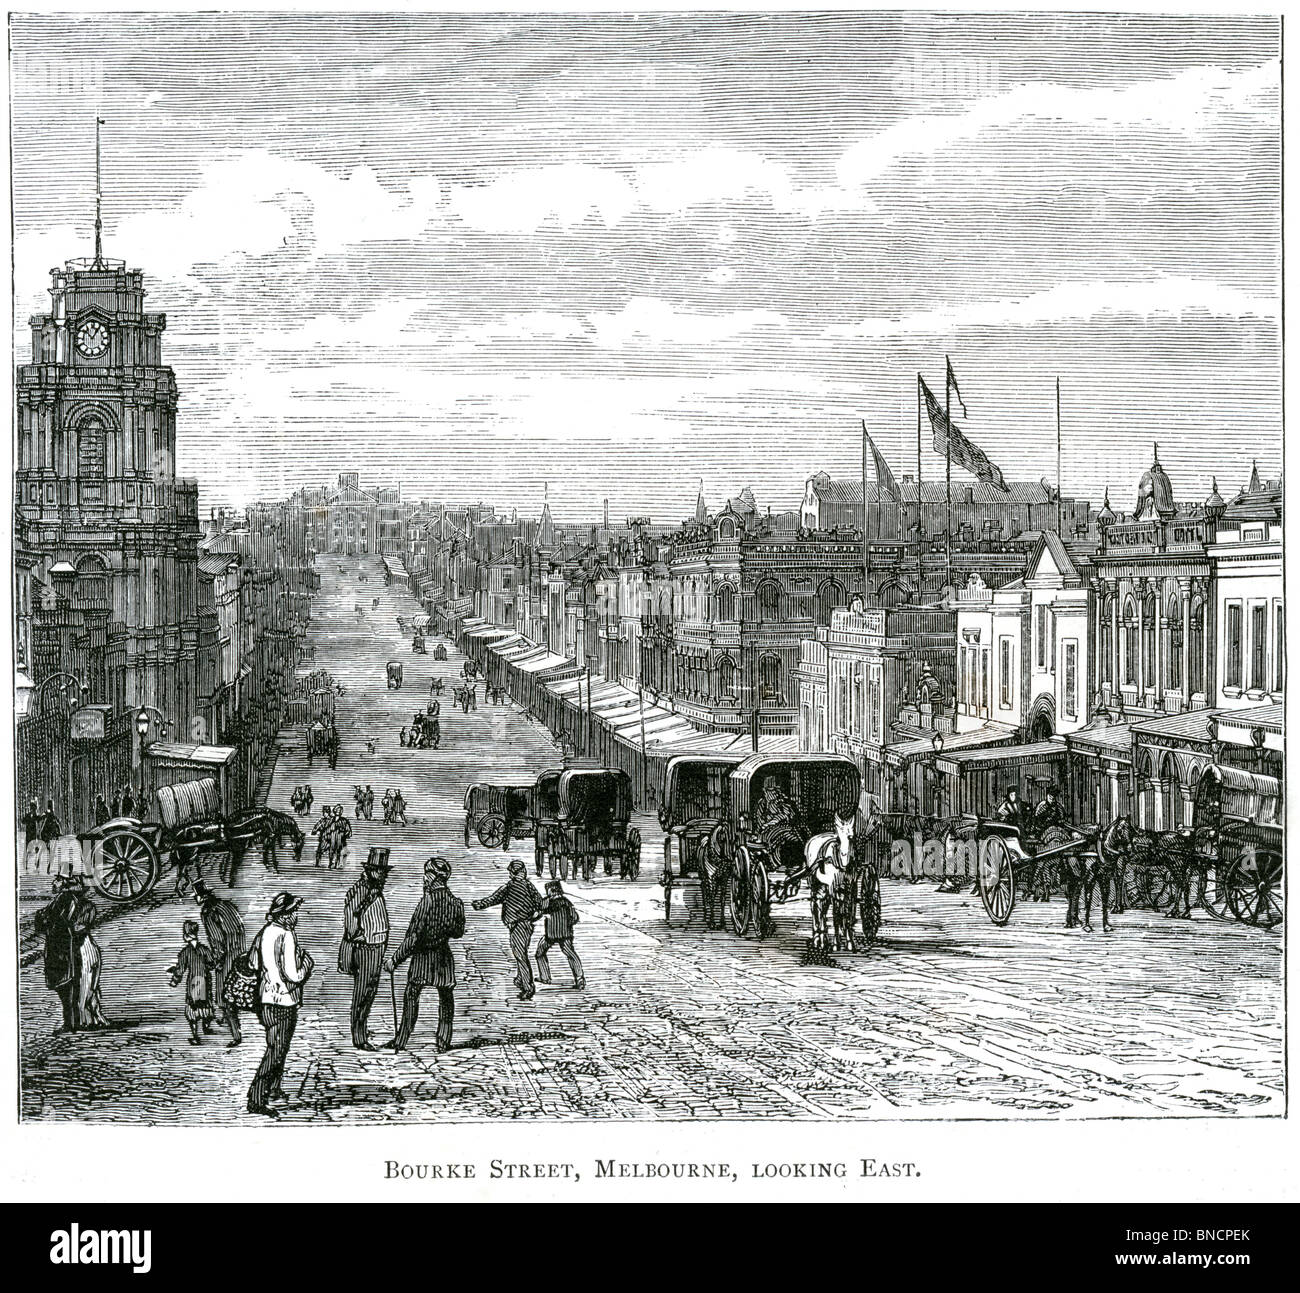 Une gravure de Bourke Street, Melbourne, Victoria, Australie - publié dans un livre imprimé en 1886. Banque D'Images